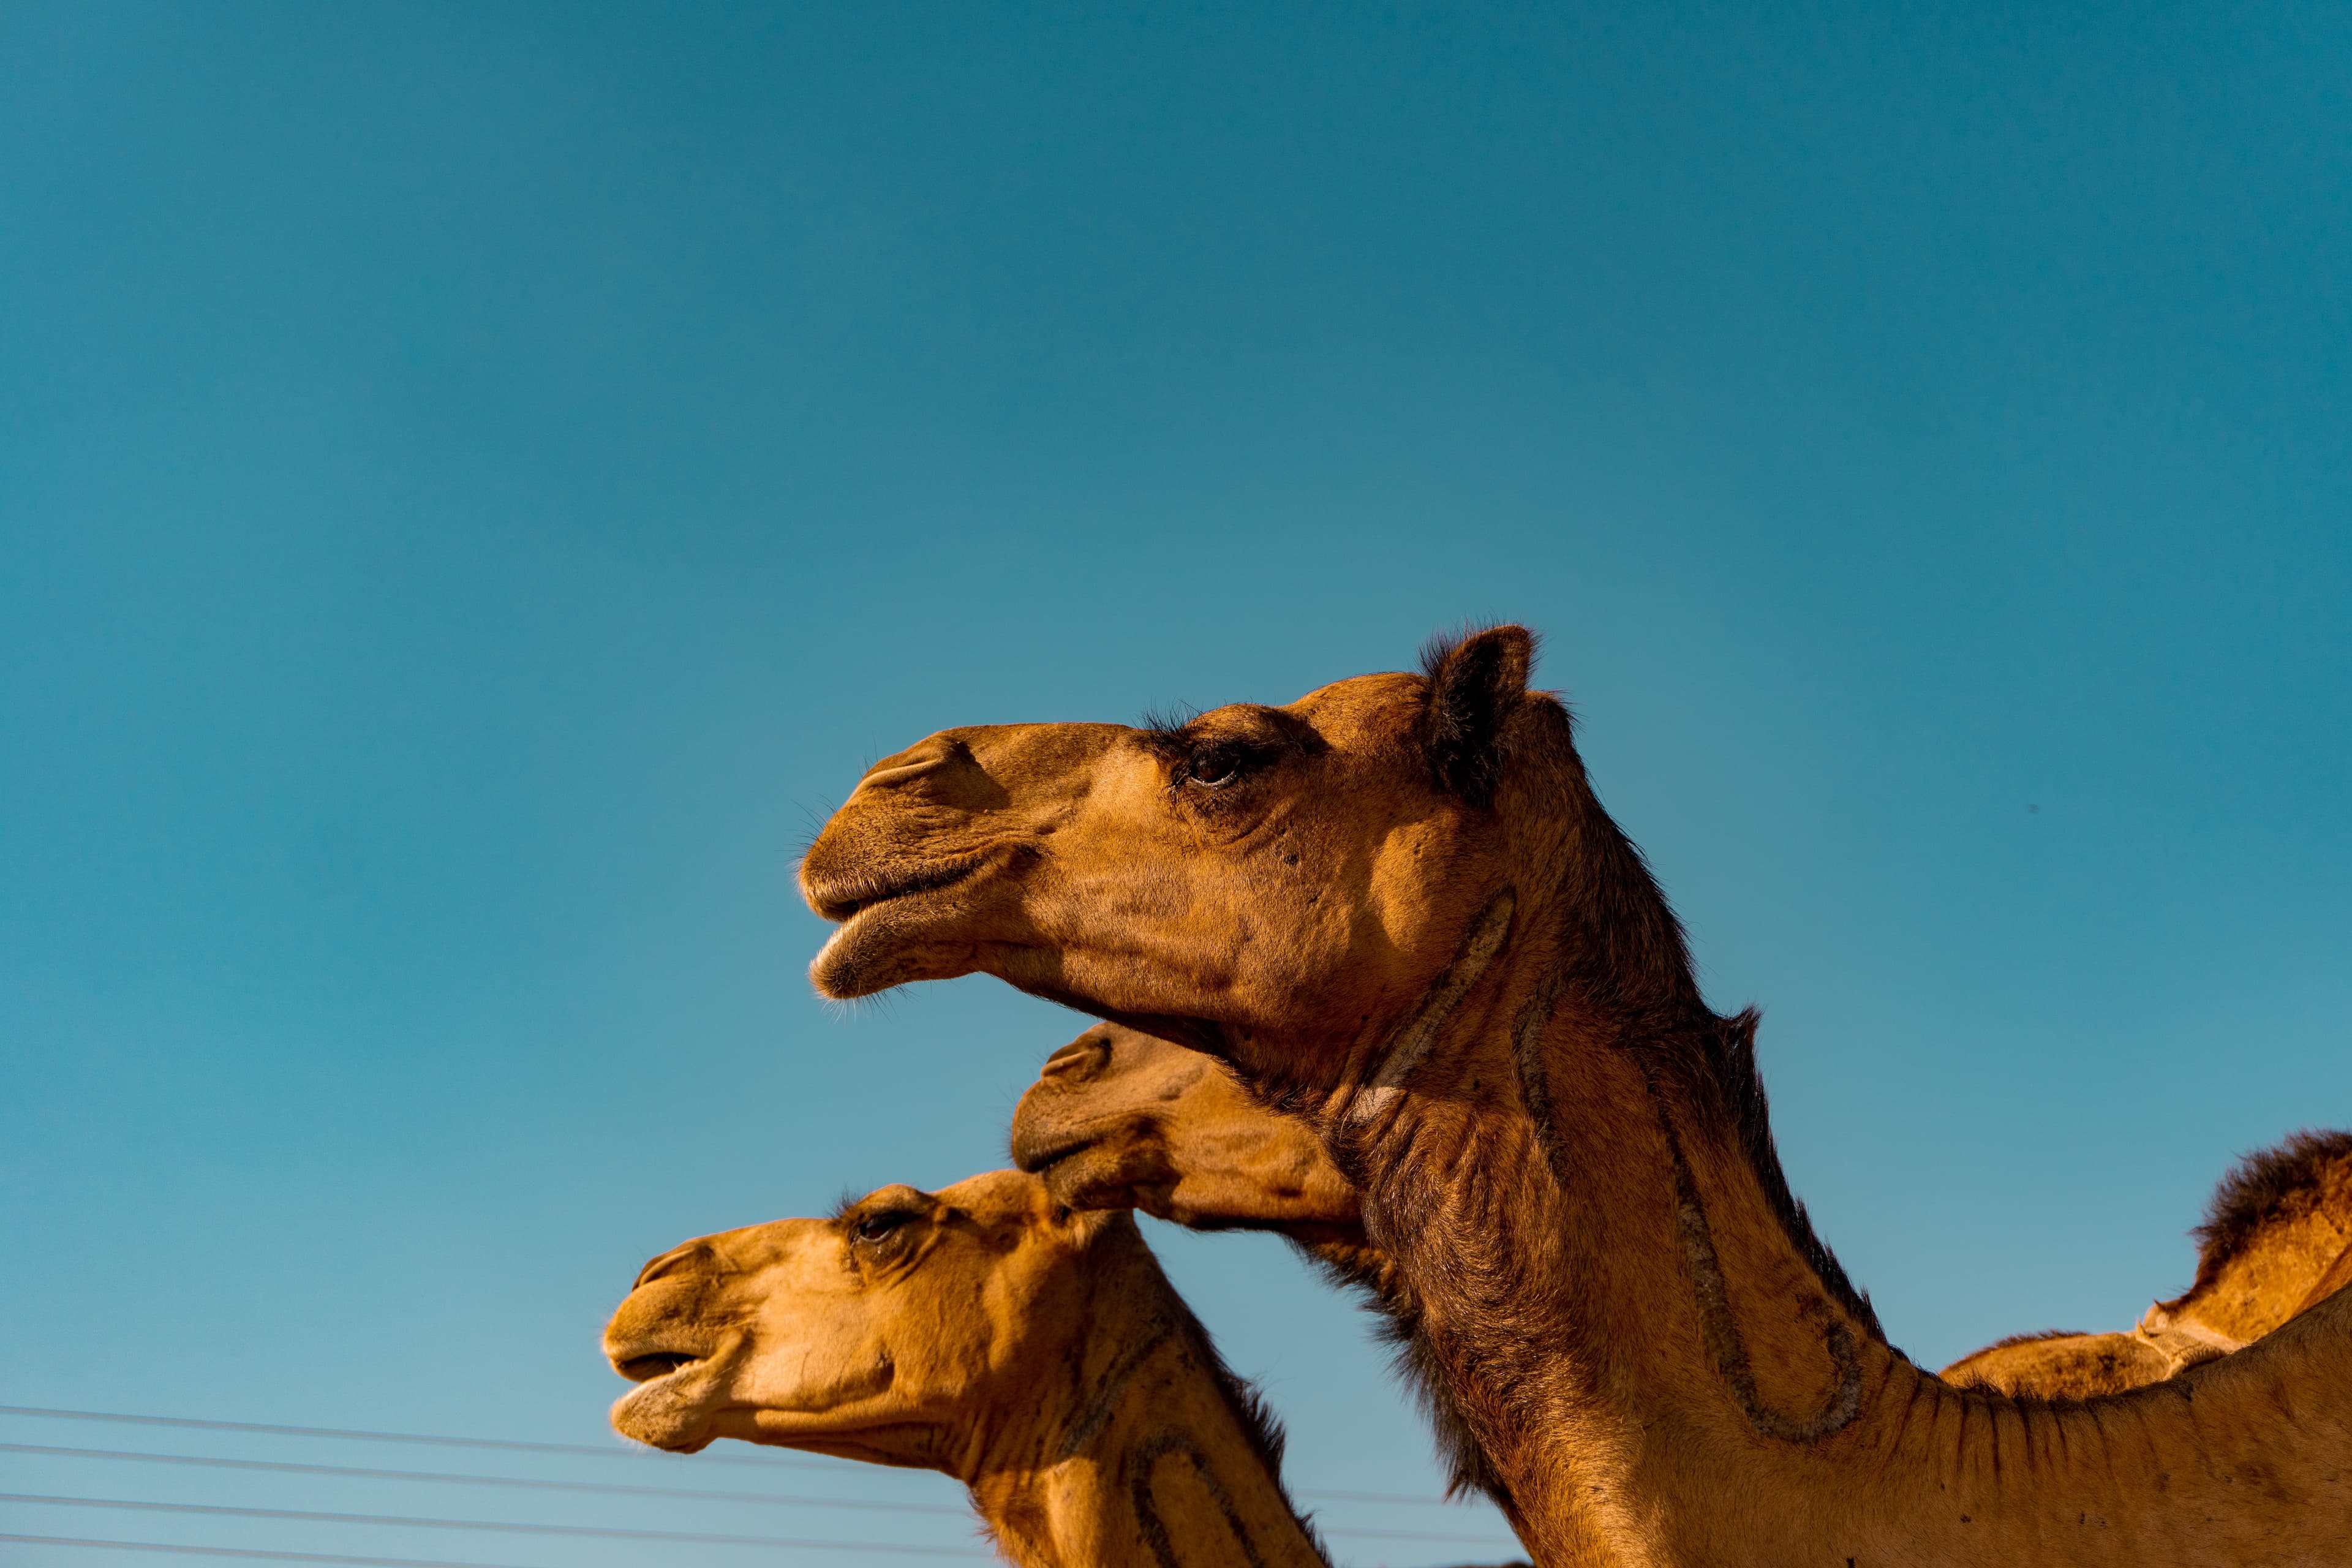 Camel in Saudi